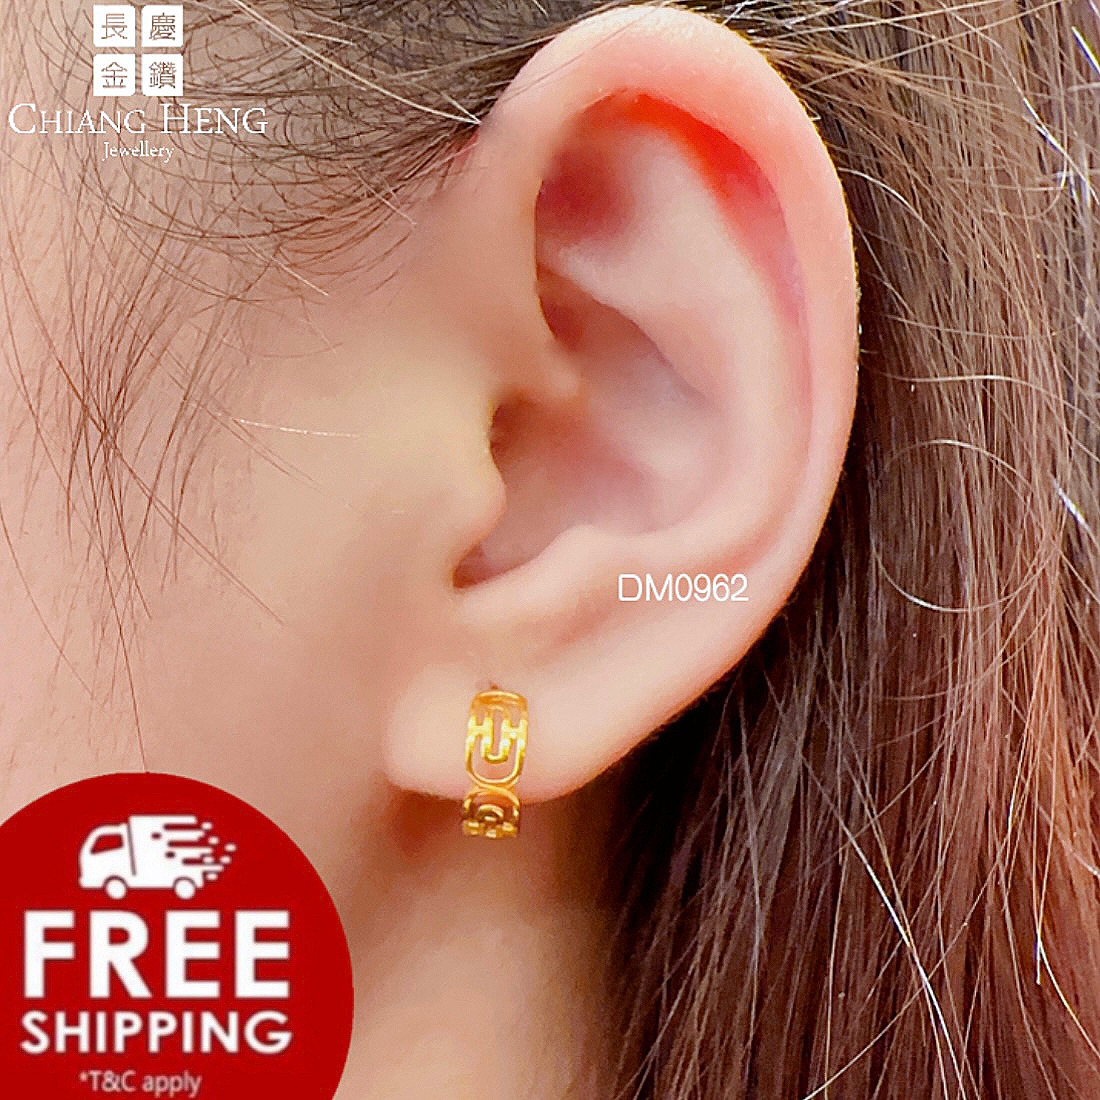 Fancy Partywear Women Gold Earrings at Rs 5000/gram in Thane | ID:  27476260512